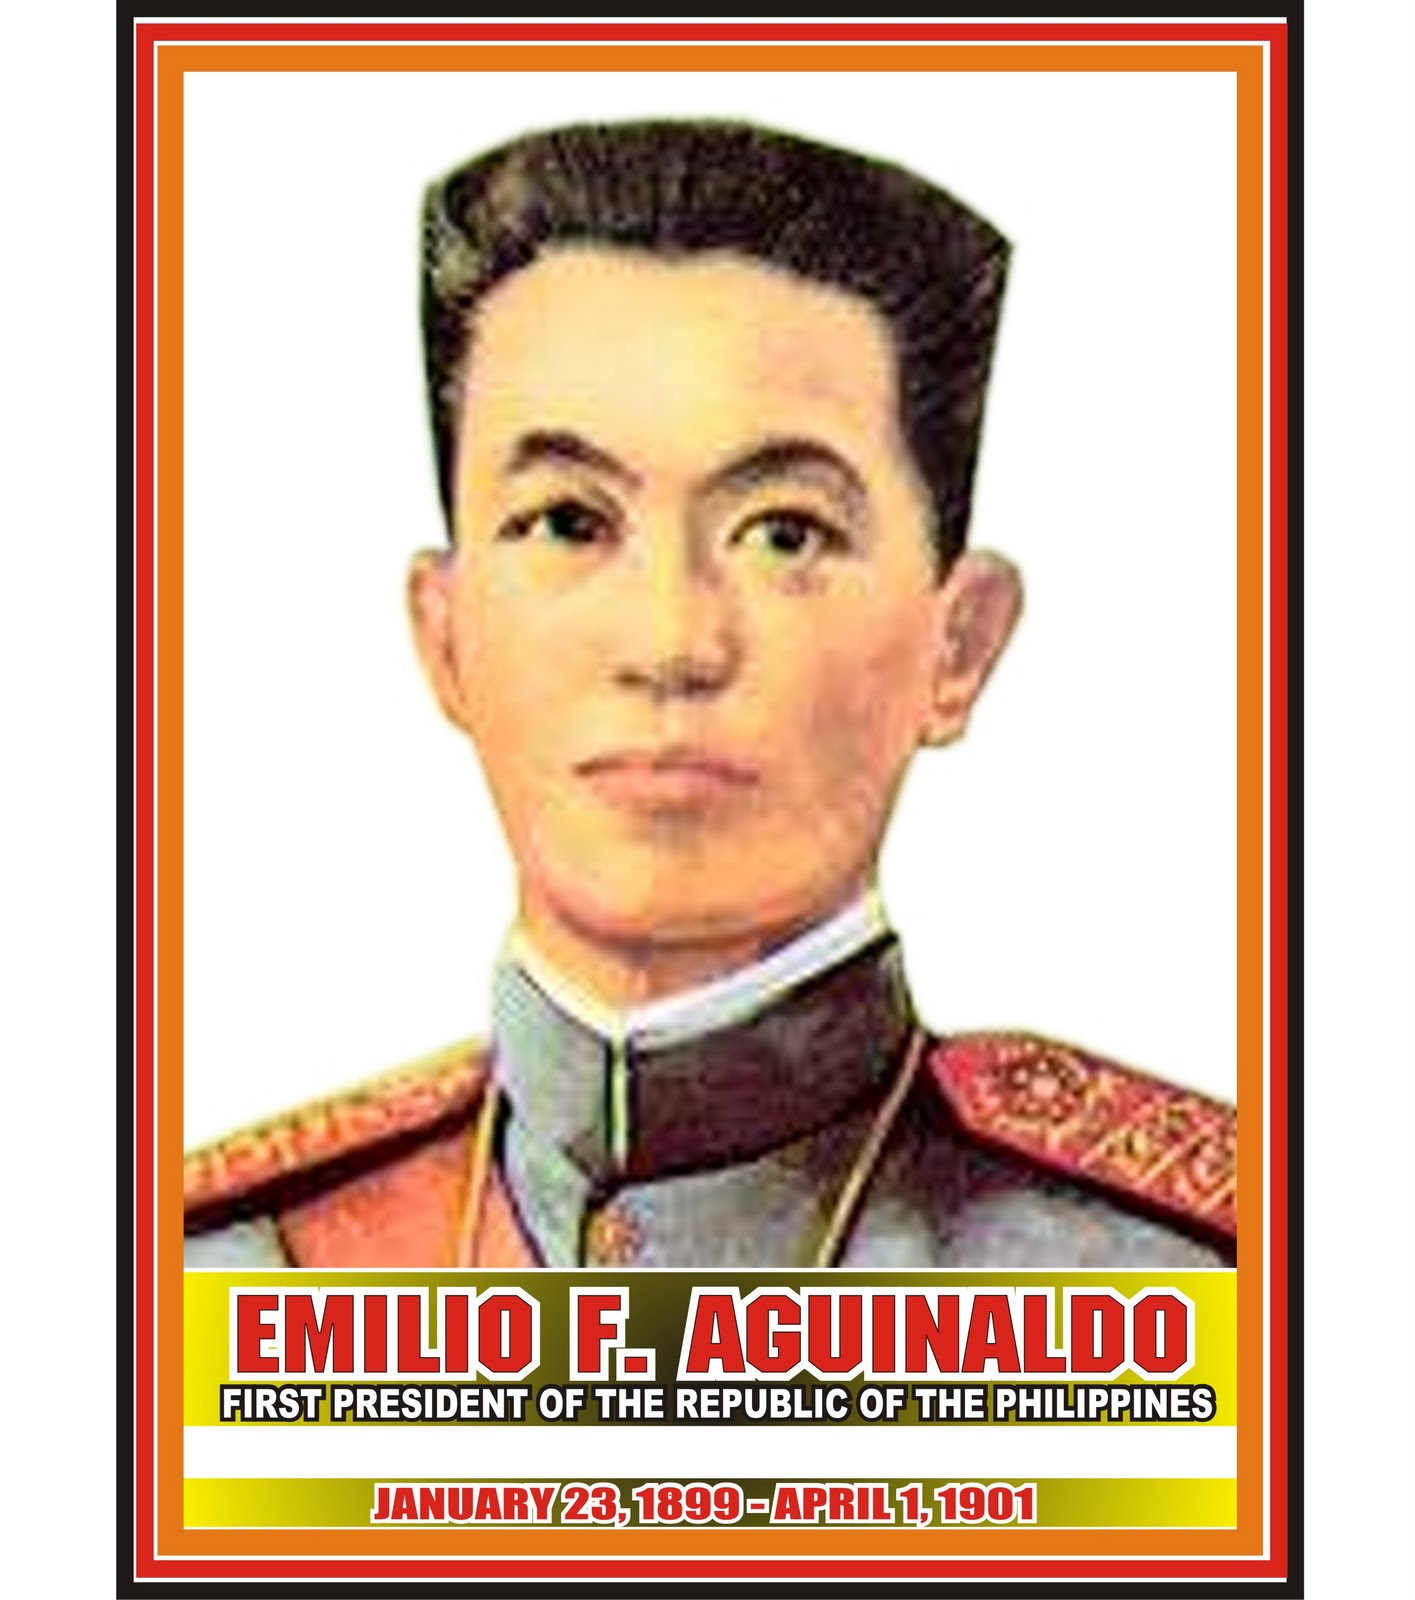 Who was Emilio Aguinaldo?